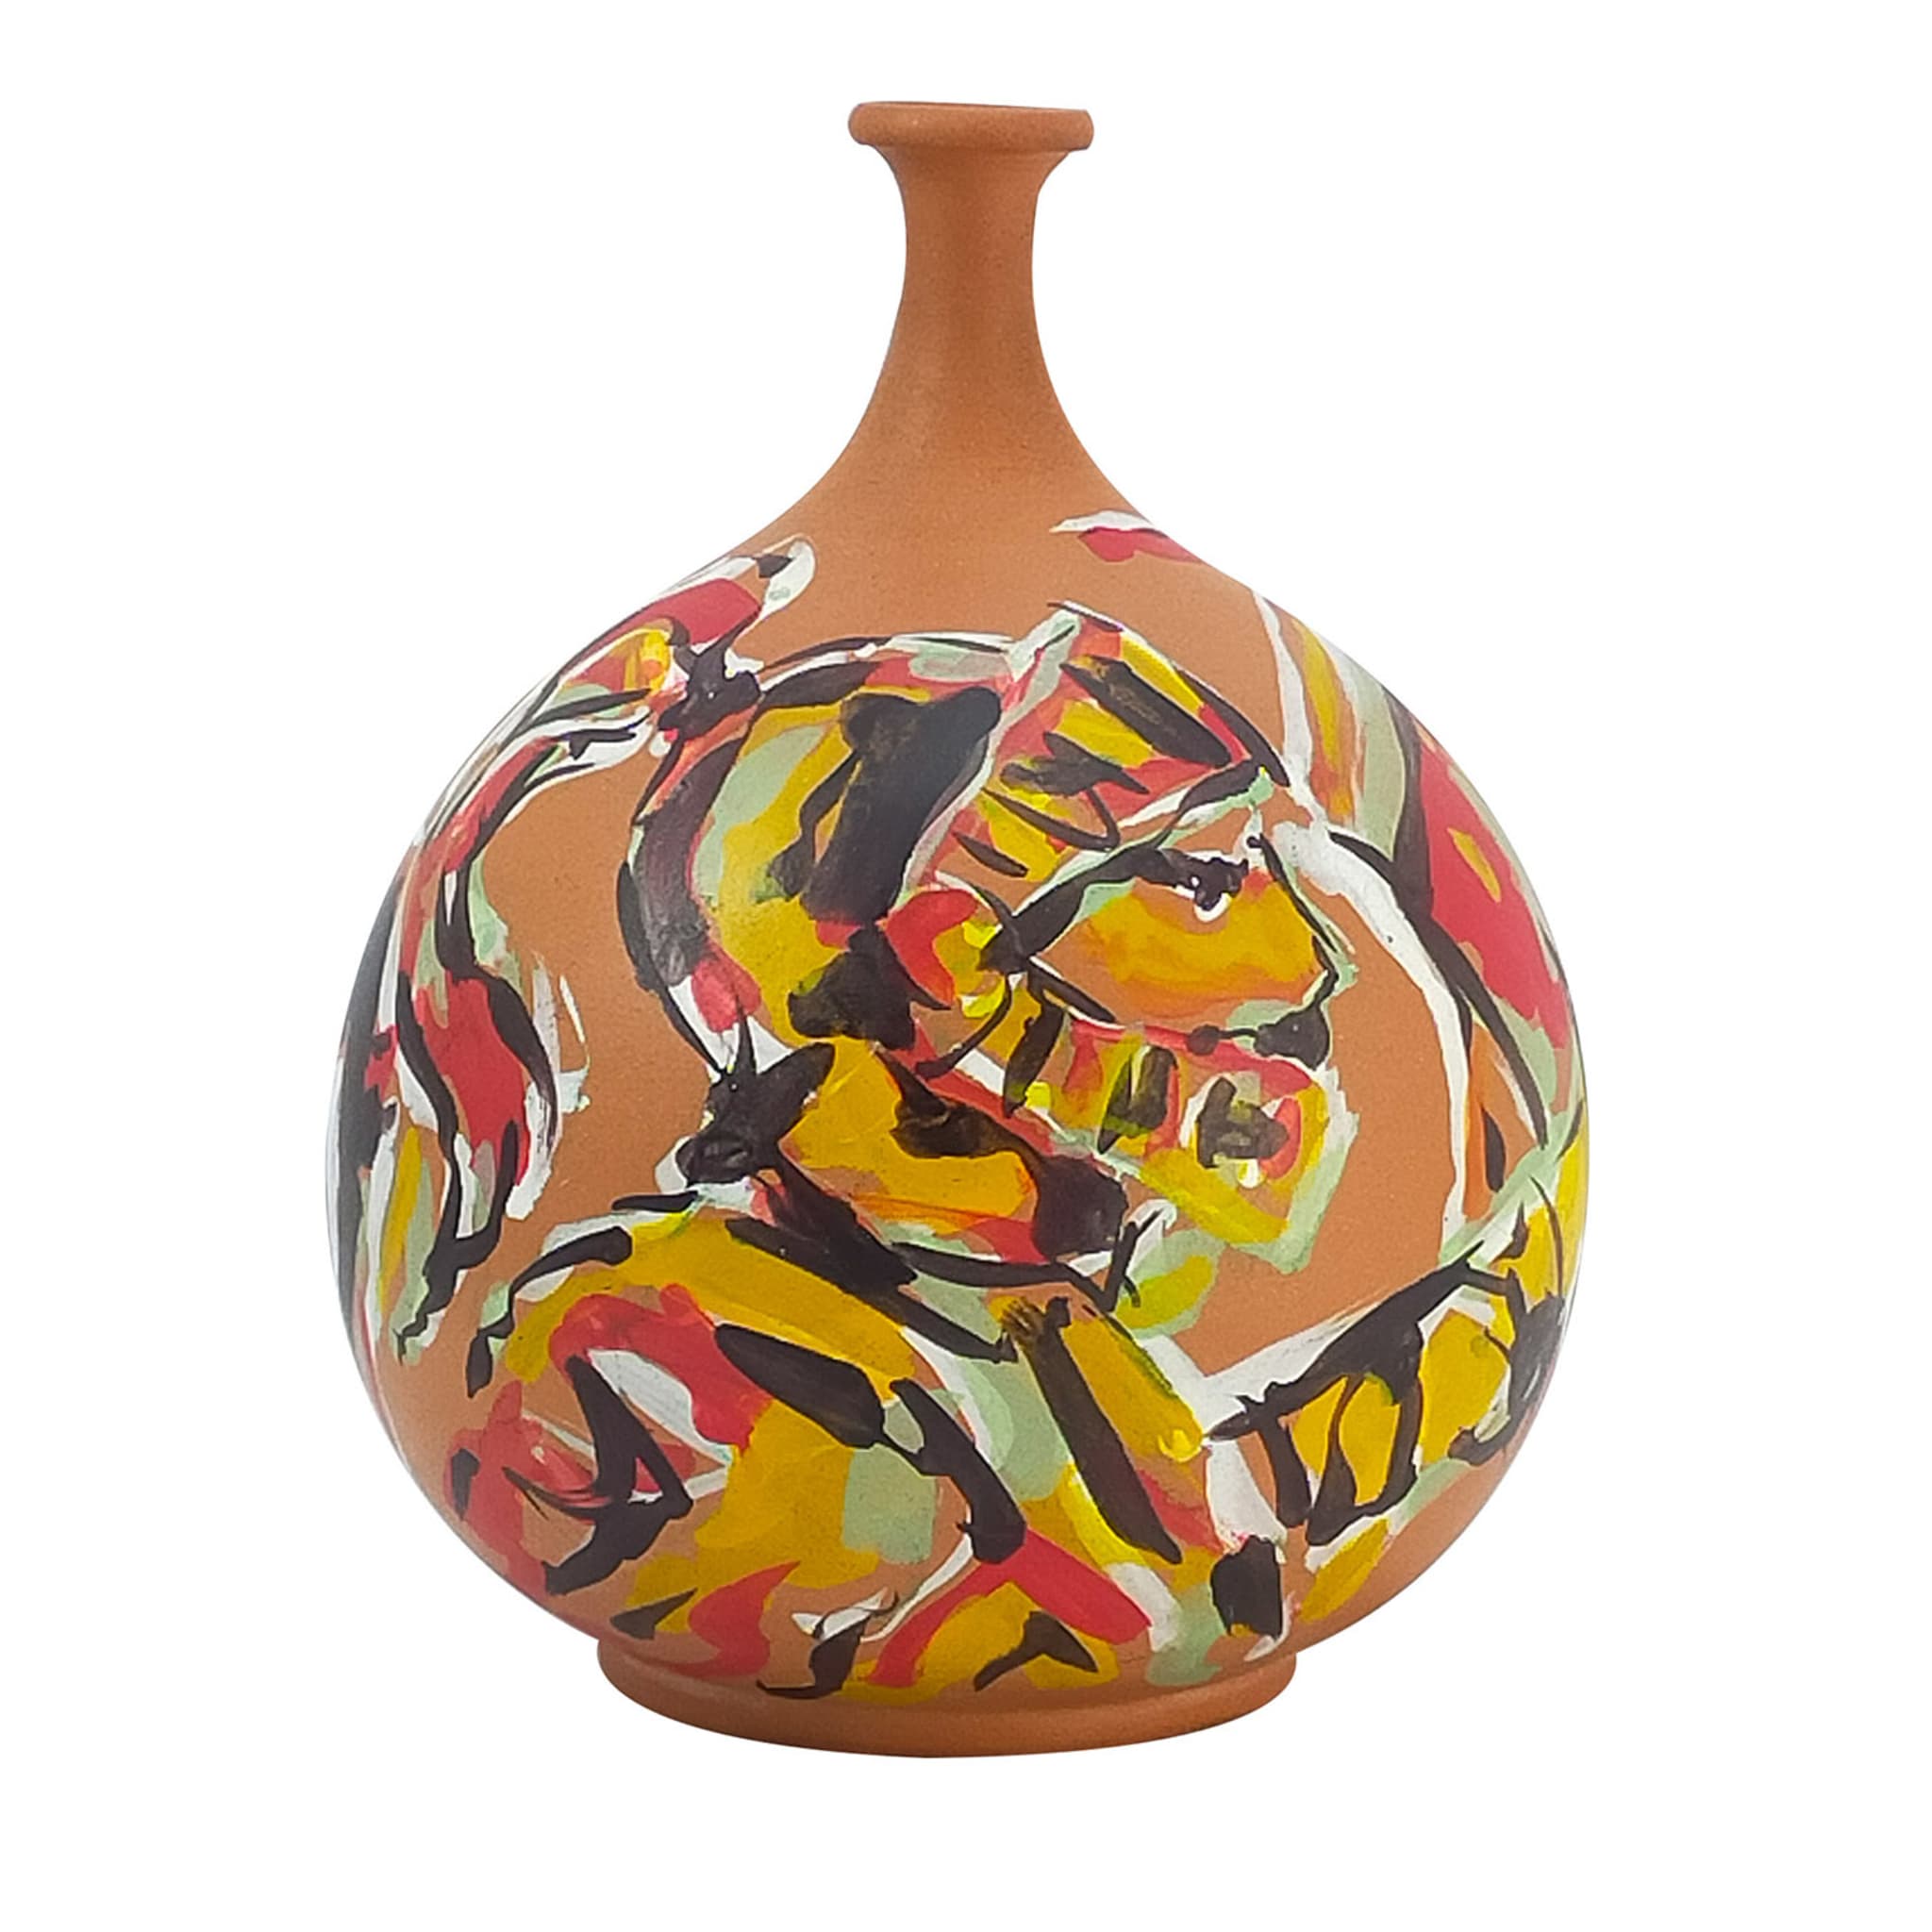 Einstielige polychrom-orangefarbene Terrakotta-Vase #1 - Hauptansicht